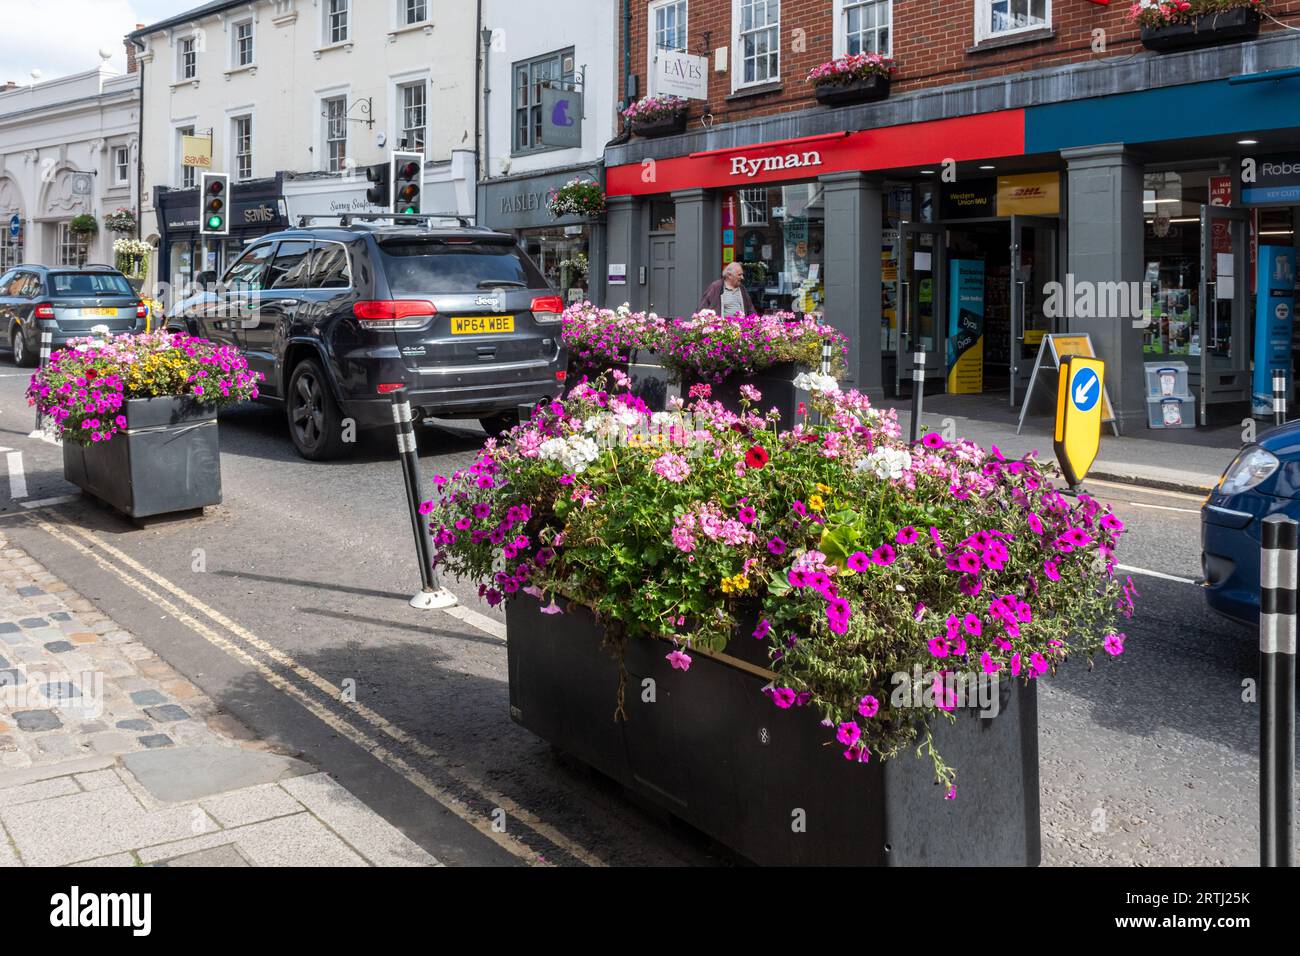 Schema di calmante del traffico, piantatori pieni di fiori posti sulla strada per restringere e rallentare il traffico, centro di Farnham, Surrey, Inghilterra, Regno Unito Foto Stock